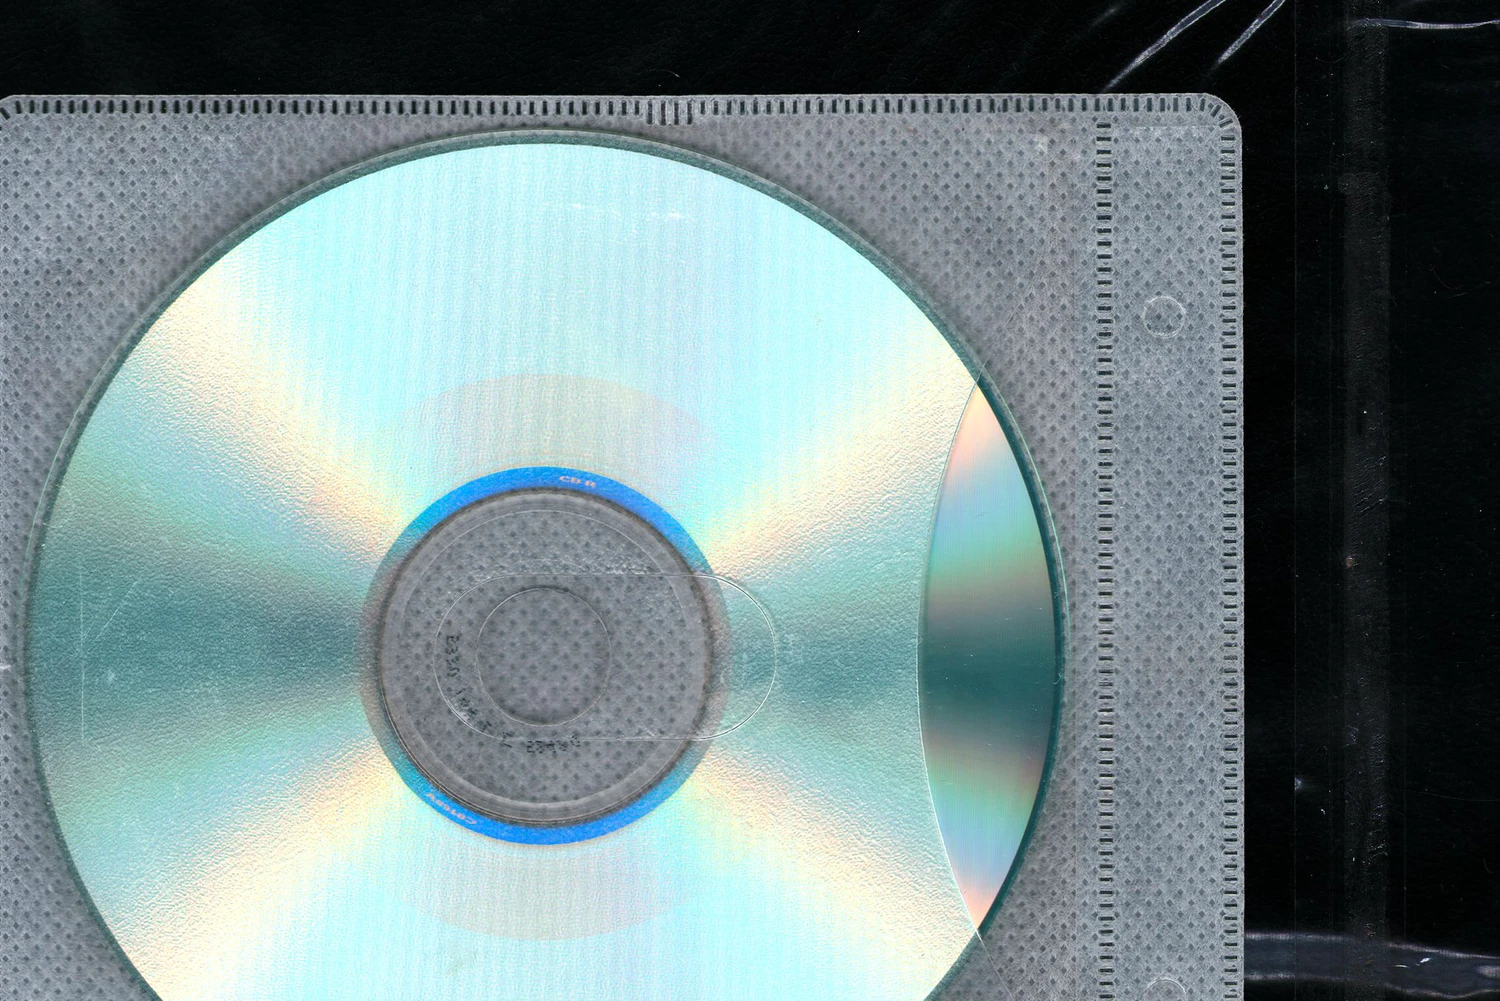 2201 潮流复古怀旧磨损光碟CD光盘塑料包装盒png免抠图片拼贴设计素材 Extradetailed-CD-textures-CD-cases-FONToMASS